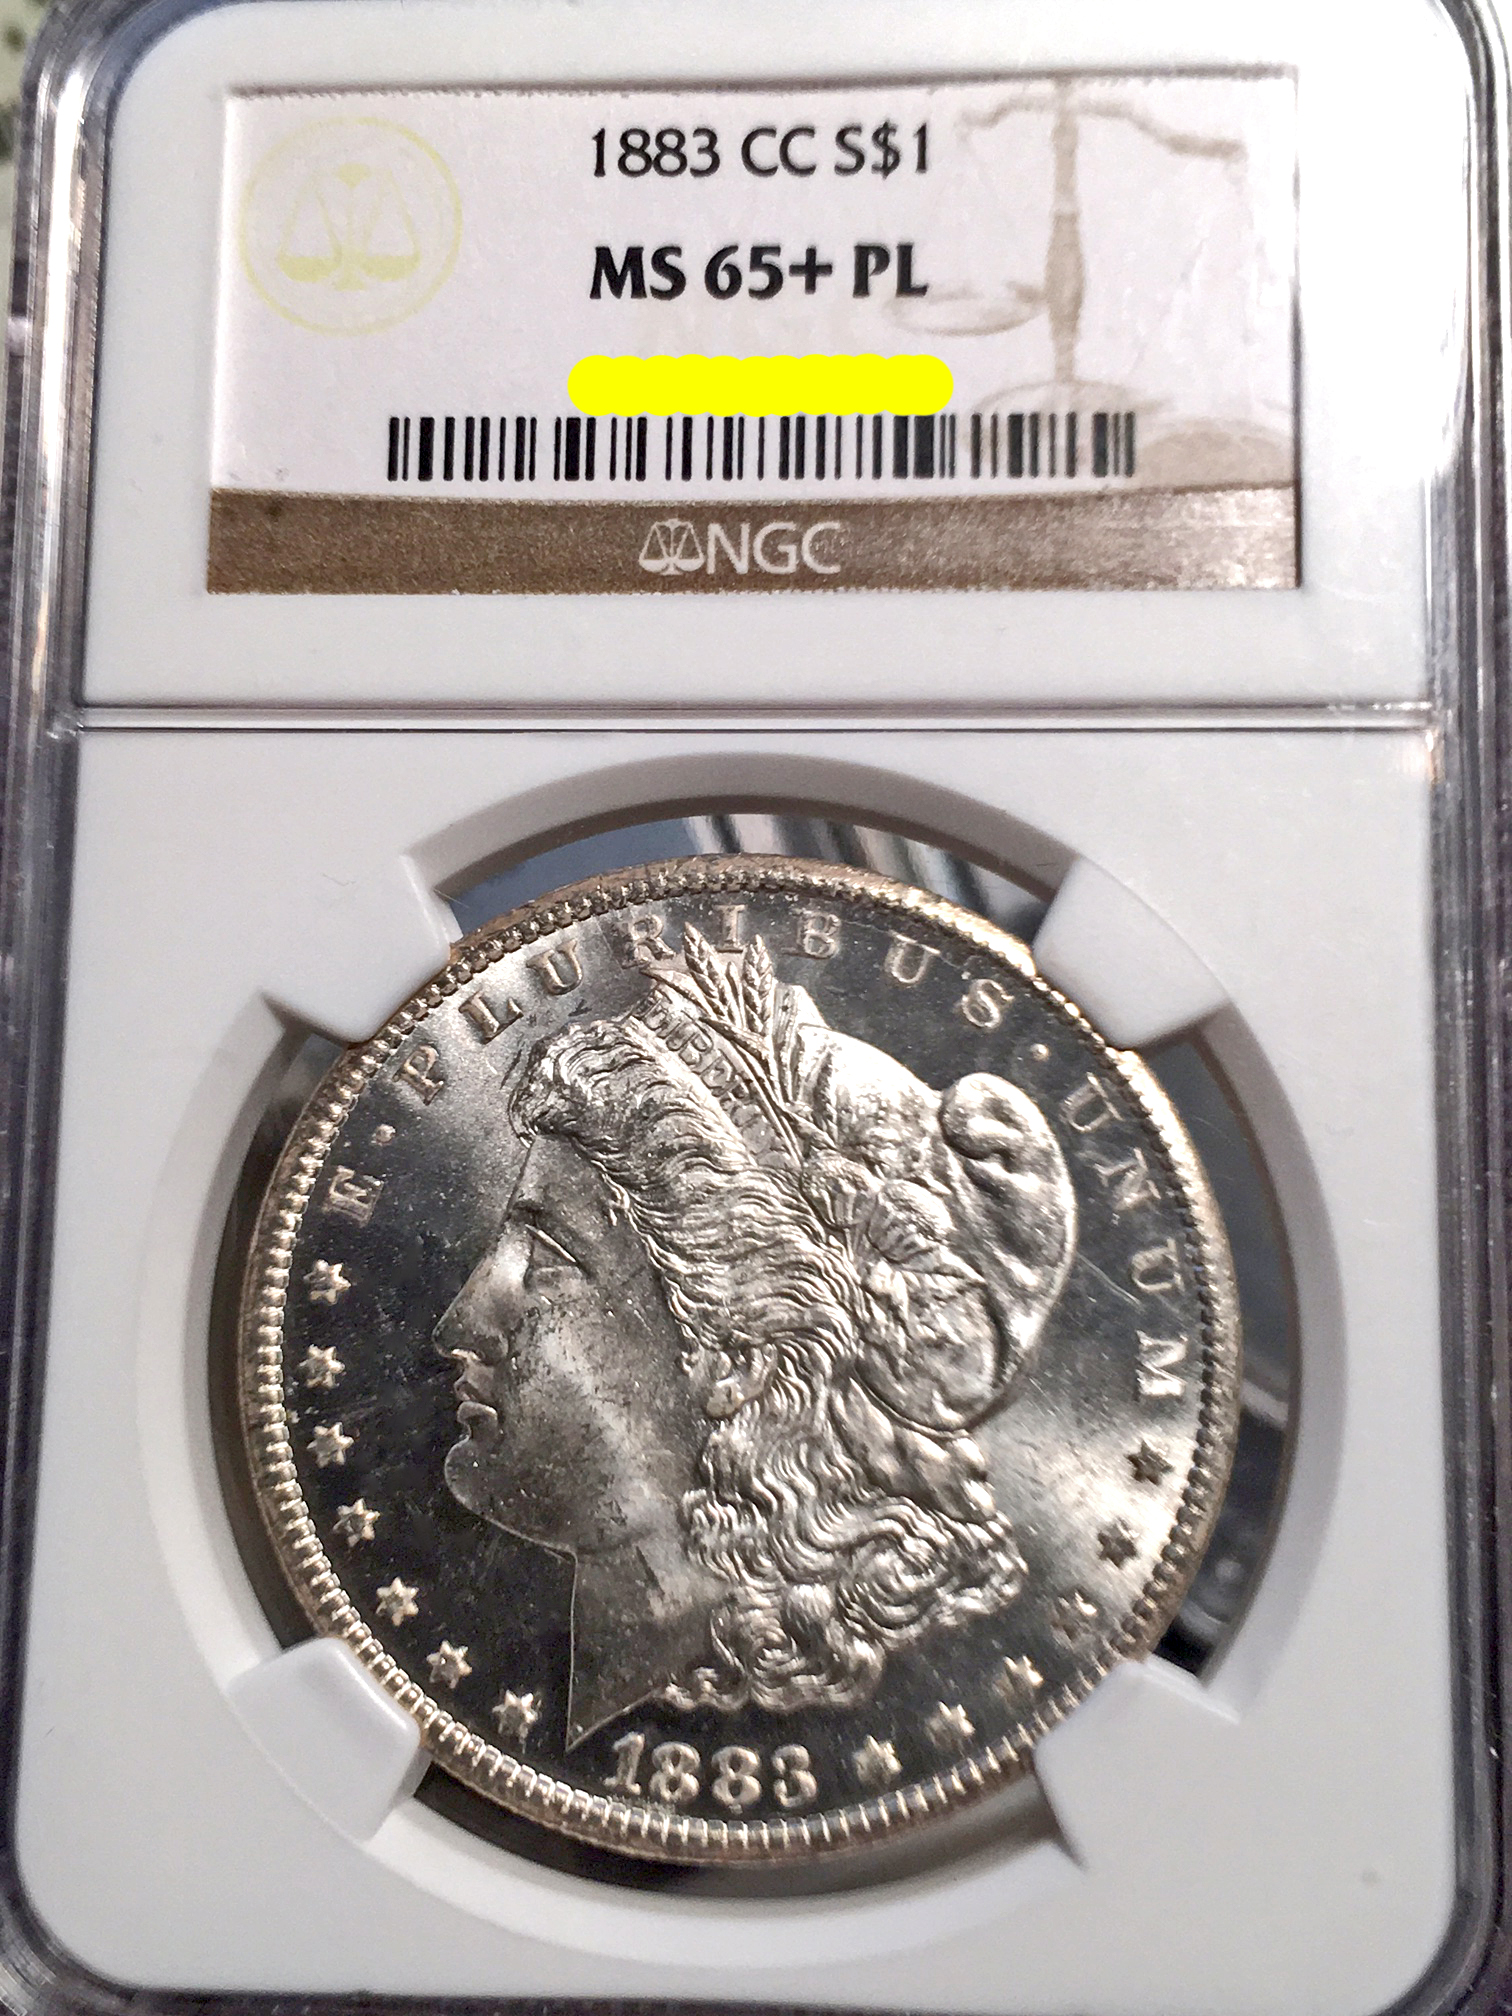 December 2016 Coin Show 1883 CC Morgan Dollar MS-65+ PL NGC